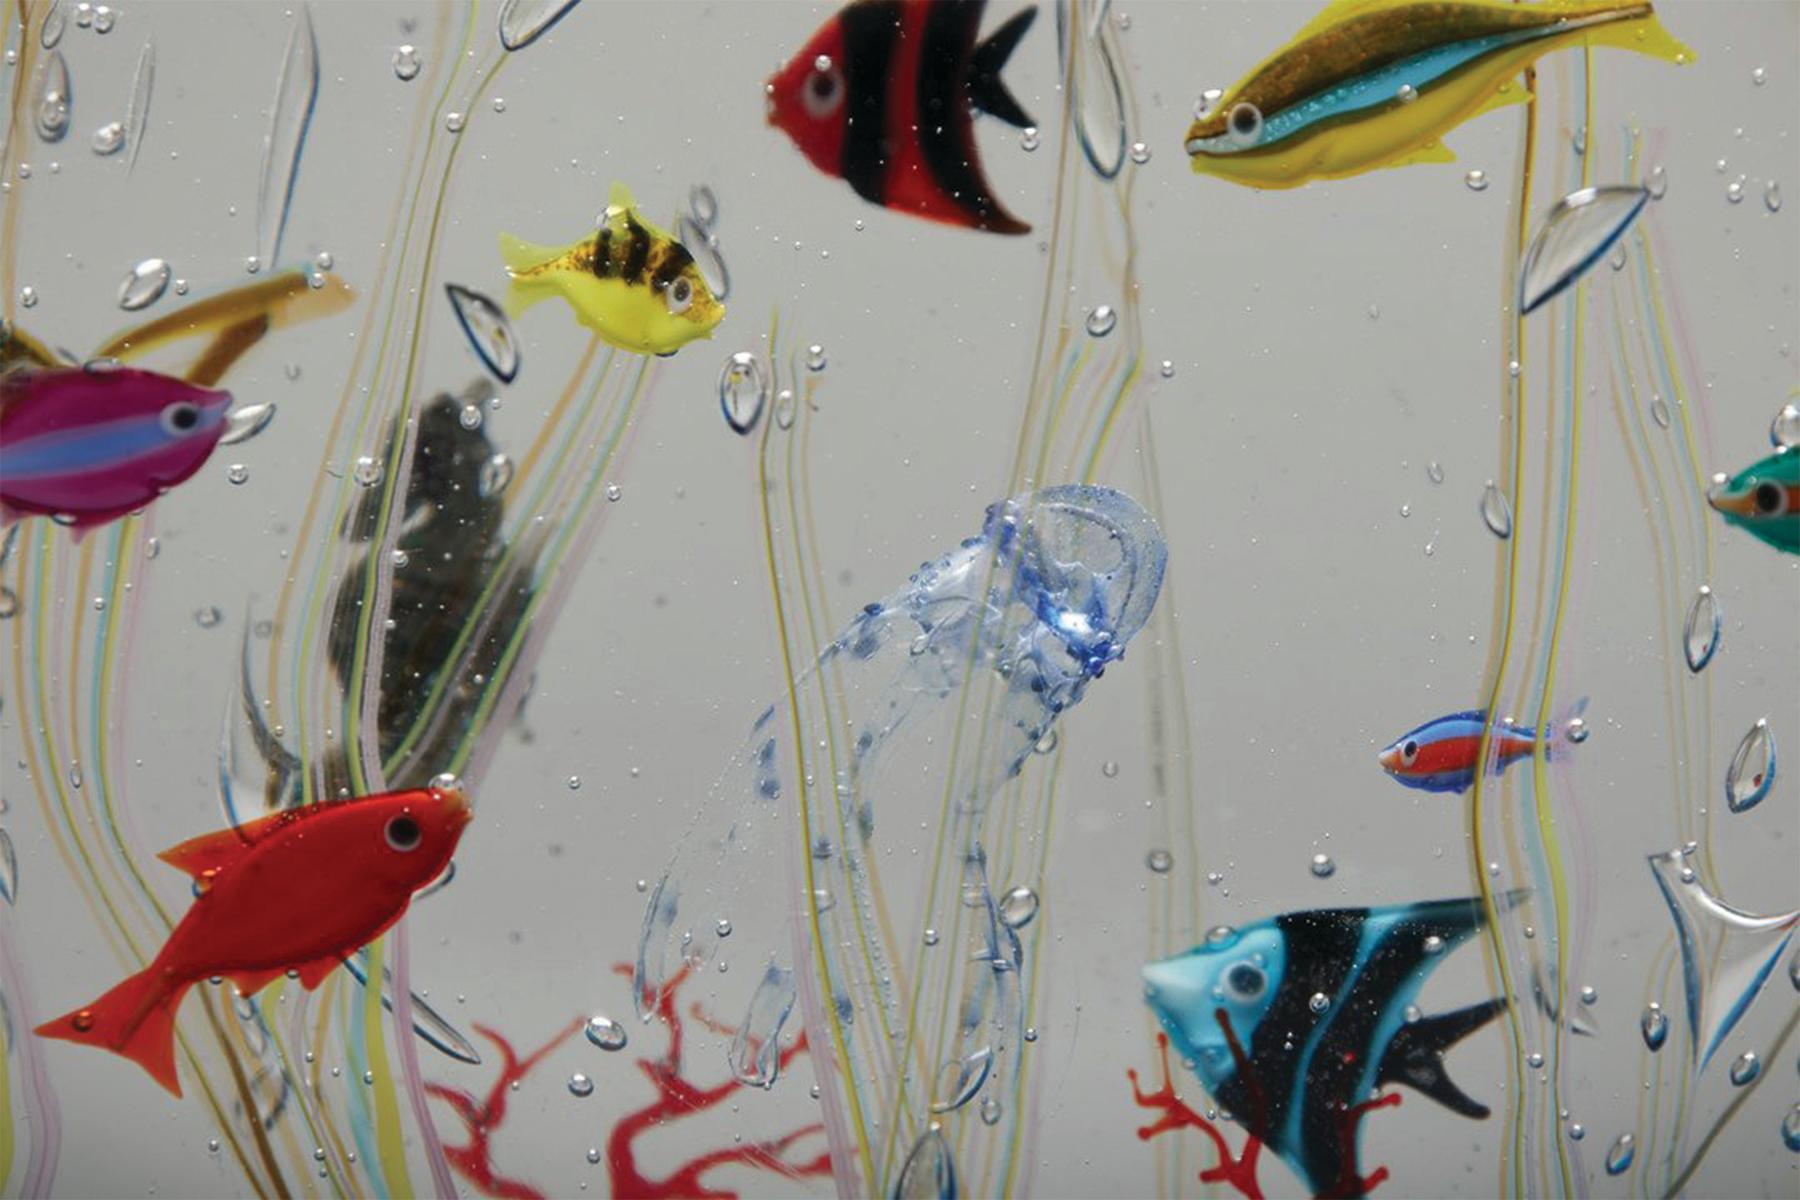 Elio Raffaelli (Italiener, geb. 1936)
Großes Murano Glas Aquarium
Geblasenes Glas
Unterzeichnet an der Basis
14 x 16 x 7 Zoll

Elios wurde am 14. Oktober 1936 in Venedig als Sohn einer auf Murano lebenden Familie geboren und besuchte die Schule auf